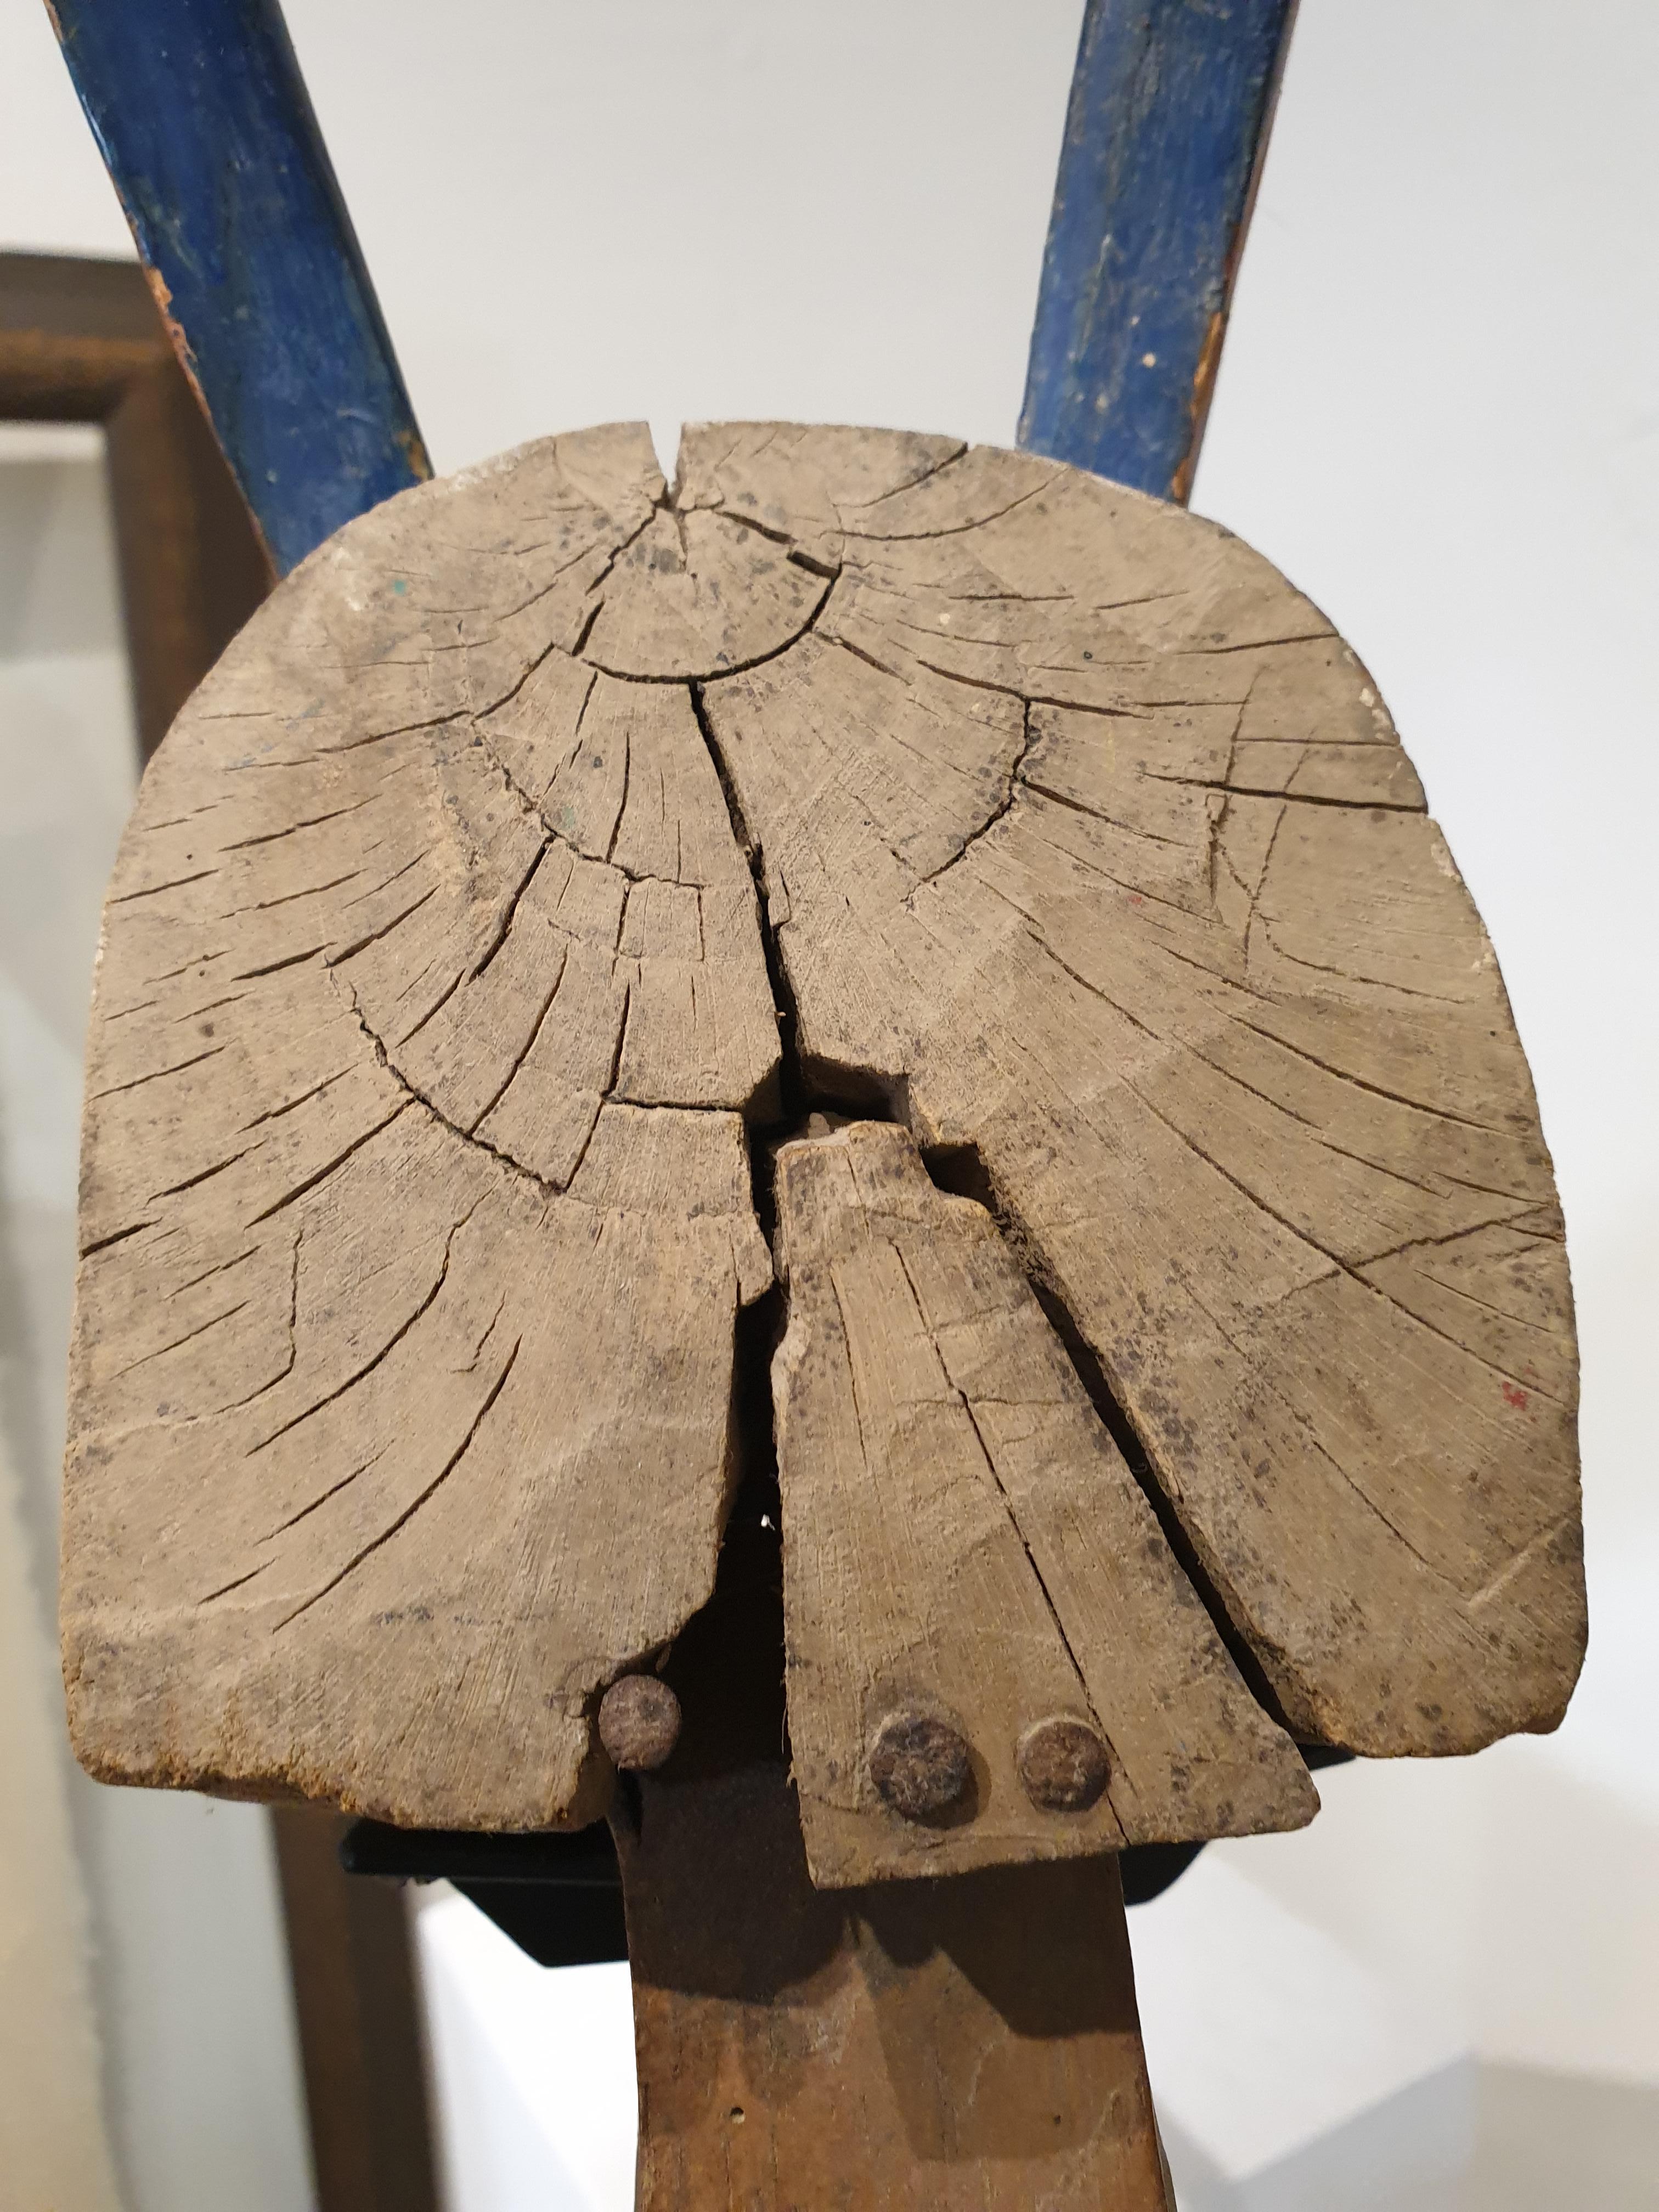 Zoomorphe afrikanische Puppenkopfskulptur aus dem frühen 20. Jahrhundert vom Bozo-Stamm in Mali.

Dieser Puppenkopf wurde von der ethnischen Gruppe der Bozo während der Sogobo-Zeremonie verwendet. 
Diese uralte Tradition wird in der Region Segou in